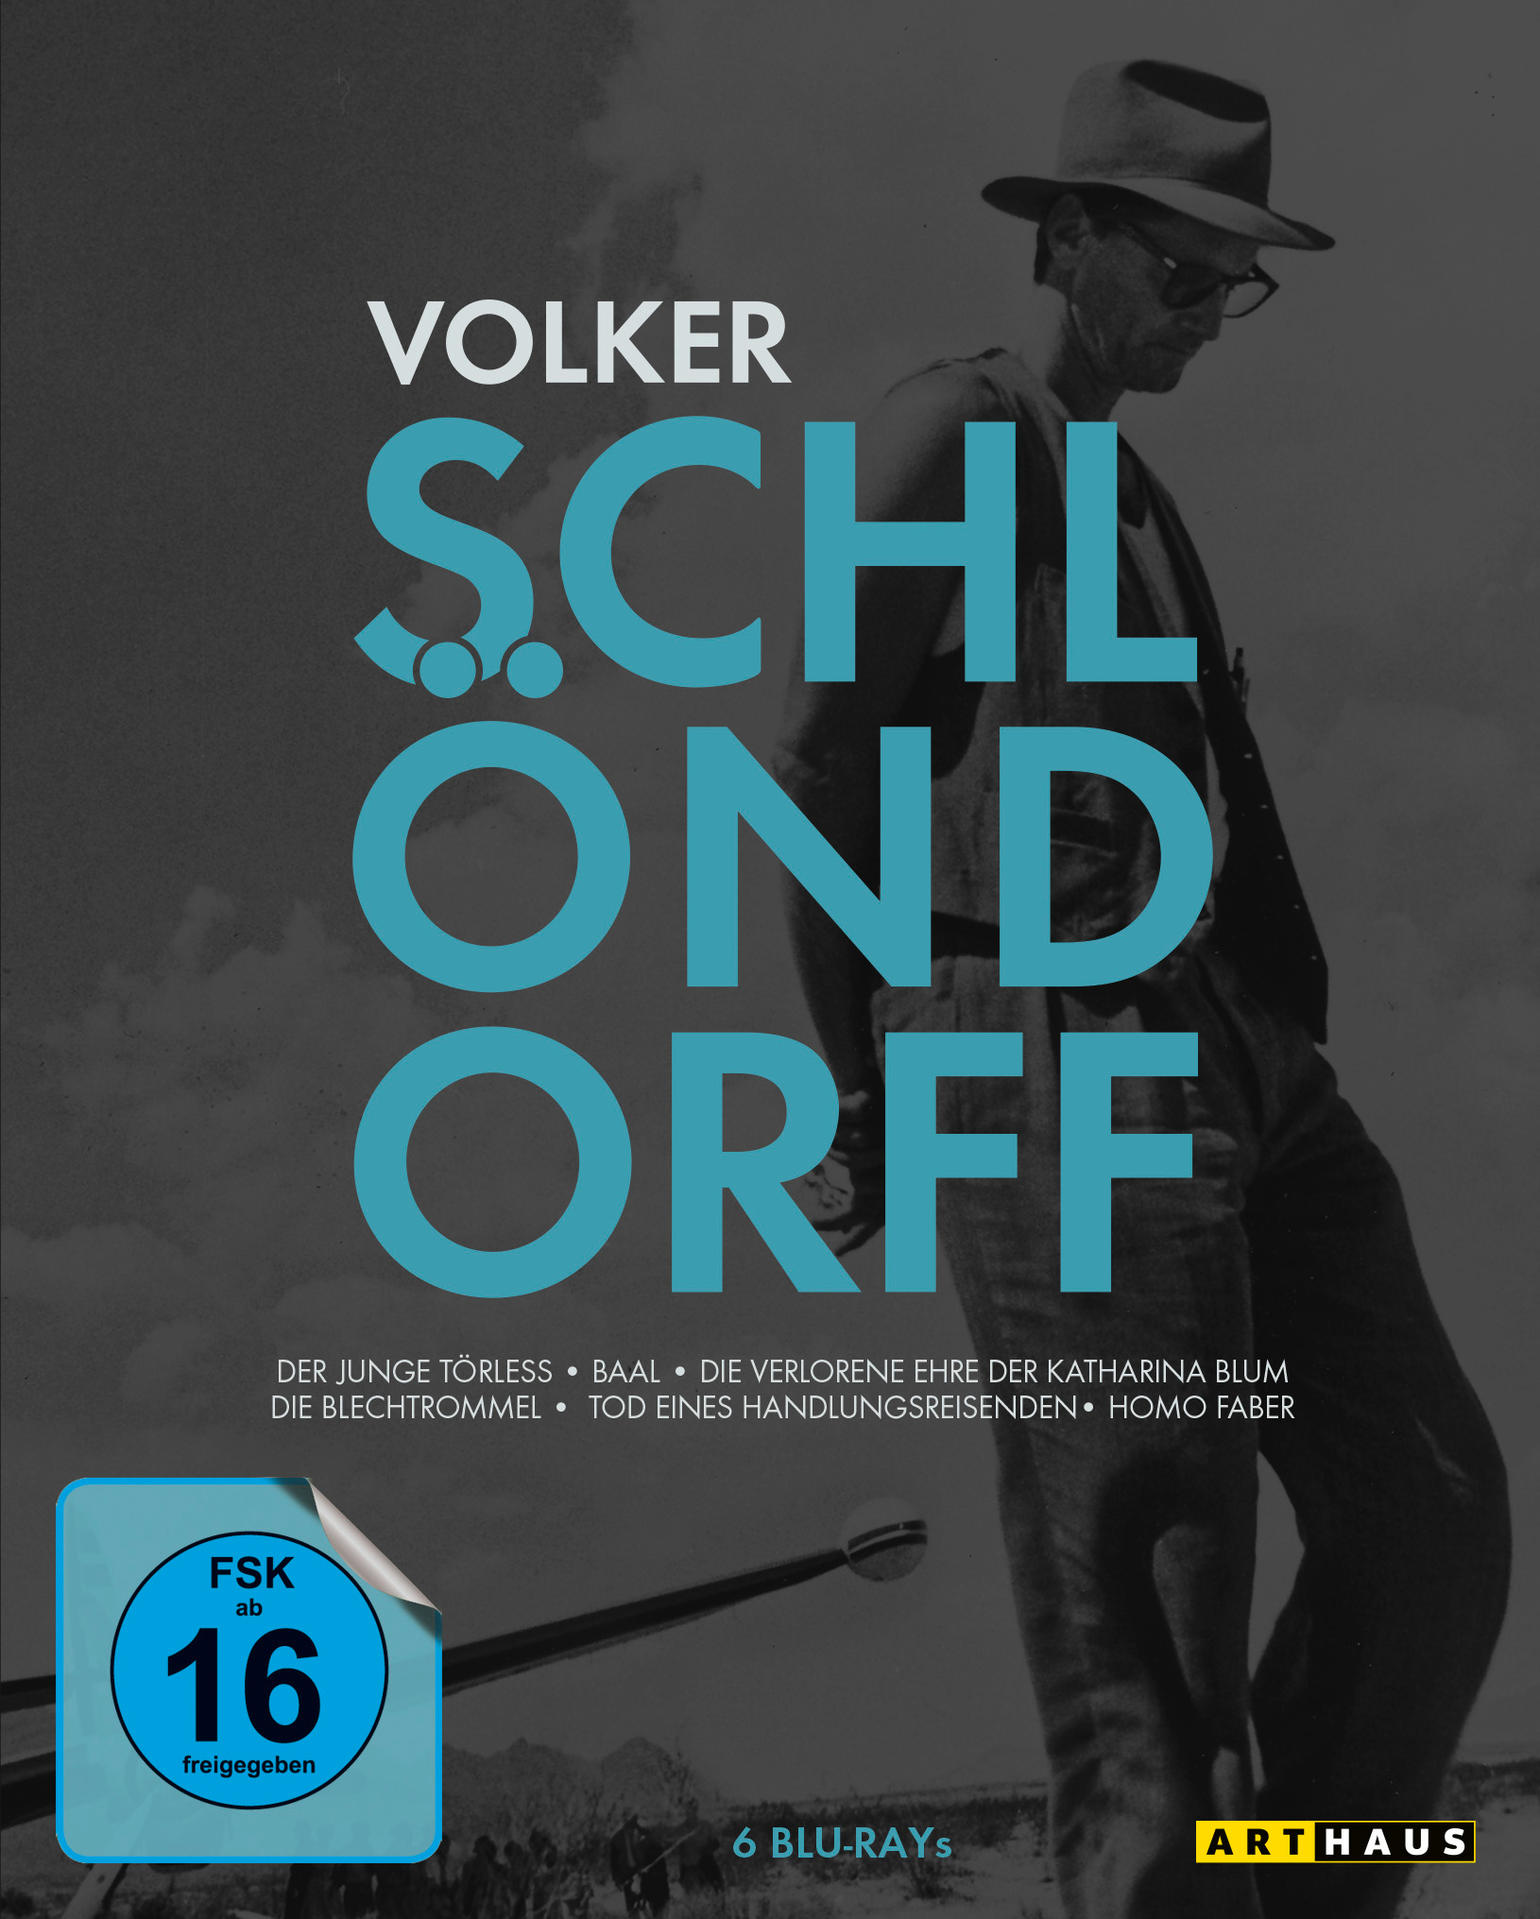 BEST VOLKER Blu-ray OF SCHLÖNDORFF